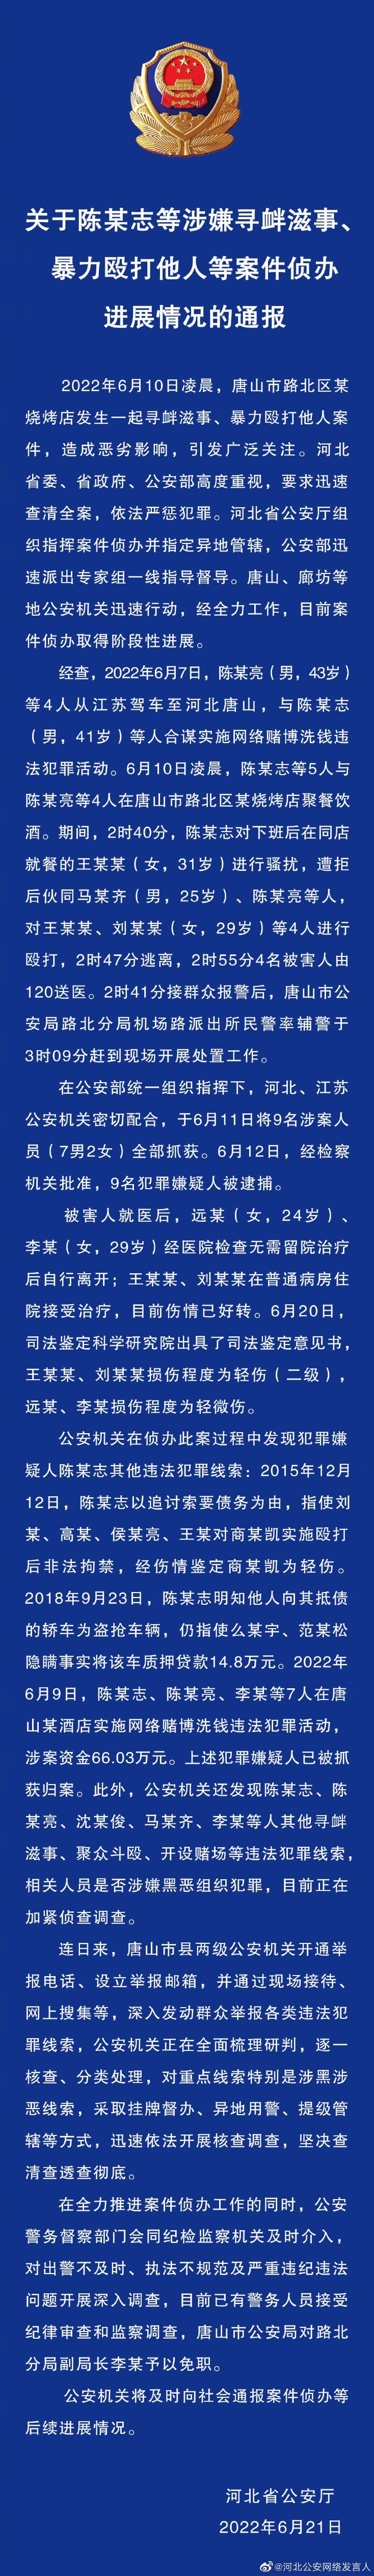 河北省公安厅发布关于陈某志等涉嫌寻衅滋事、暴力殴打他人等案件侦办进展情况的通报